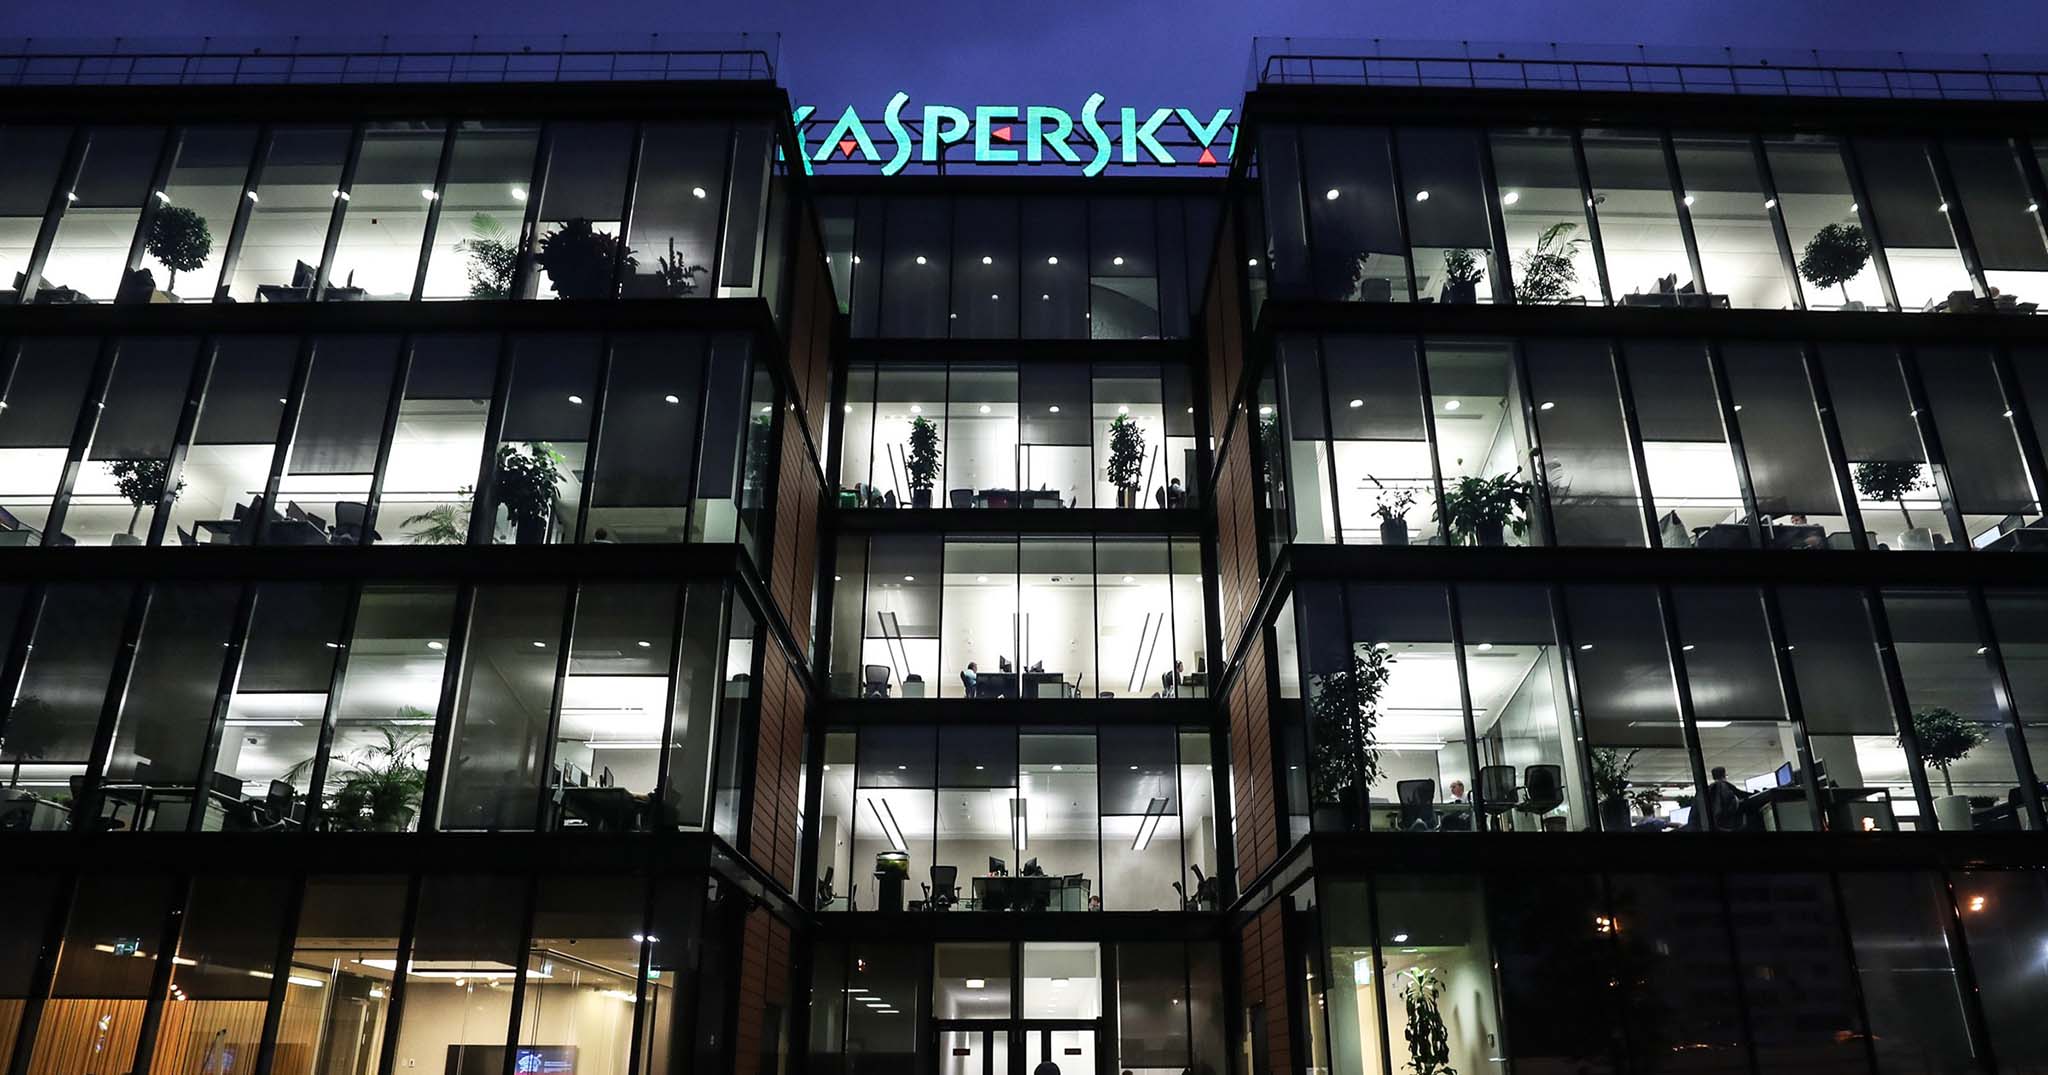 Hà Lan ngưng sử dụng Kaspersky, hãng bảo mật Nga buộc phải dời trung tâm dữ liệu sang Zurich